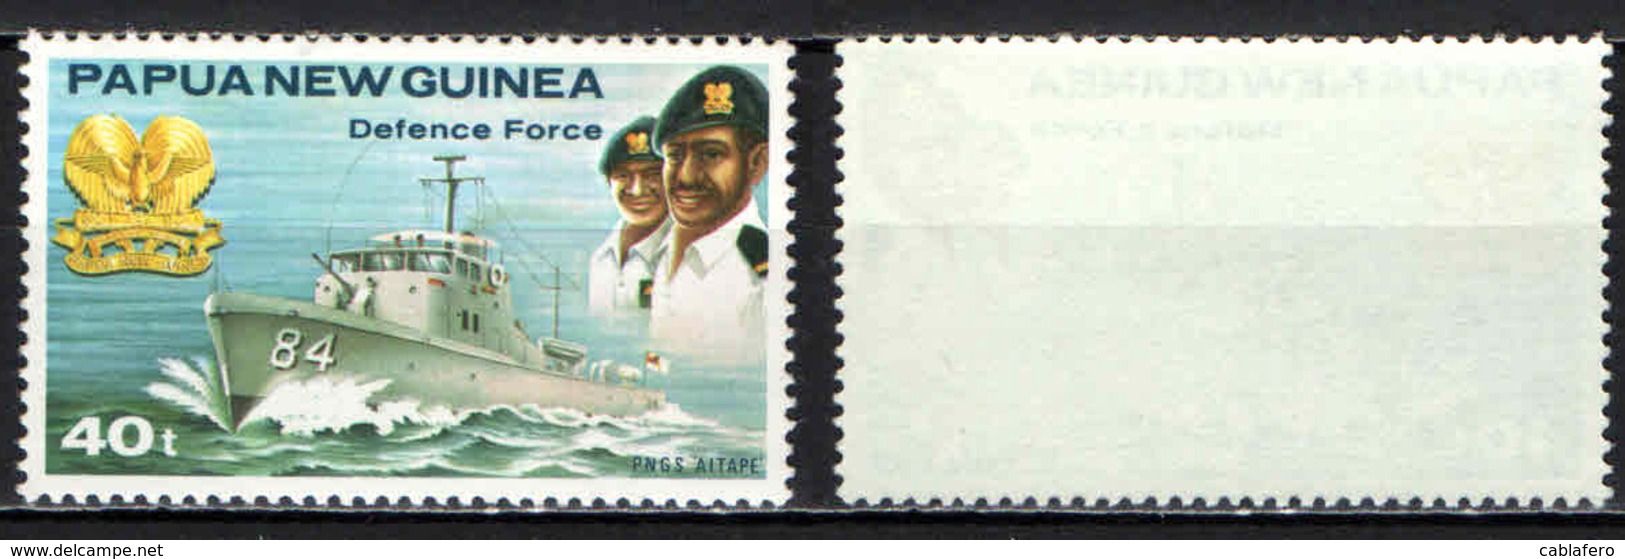 PAPUA NUOVA GUINEA - 1981 - DEFENCE FORCE - MNH - Papua Nuova Guinea